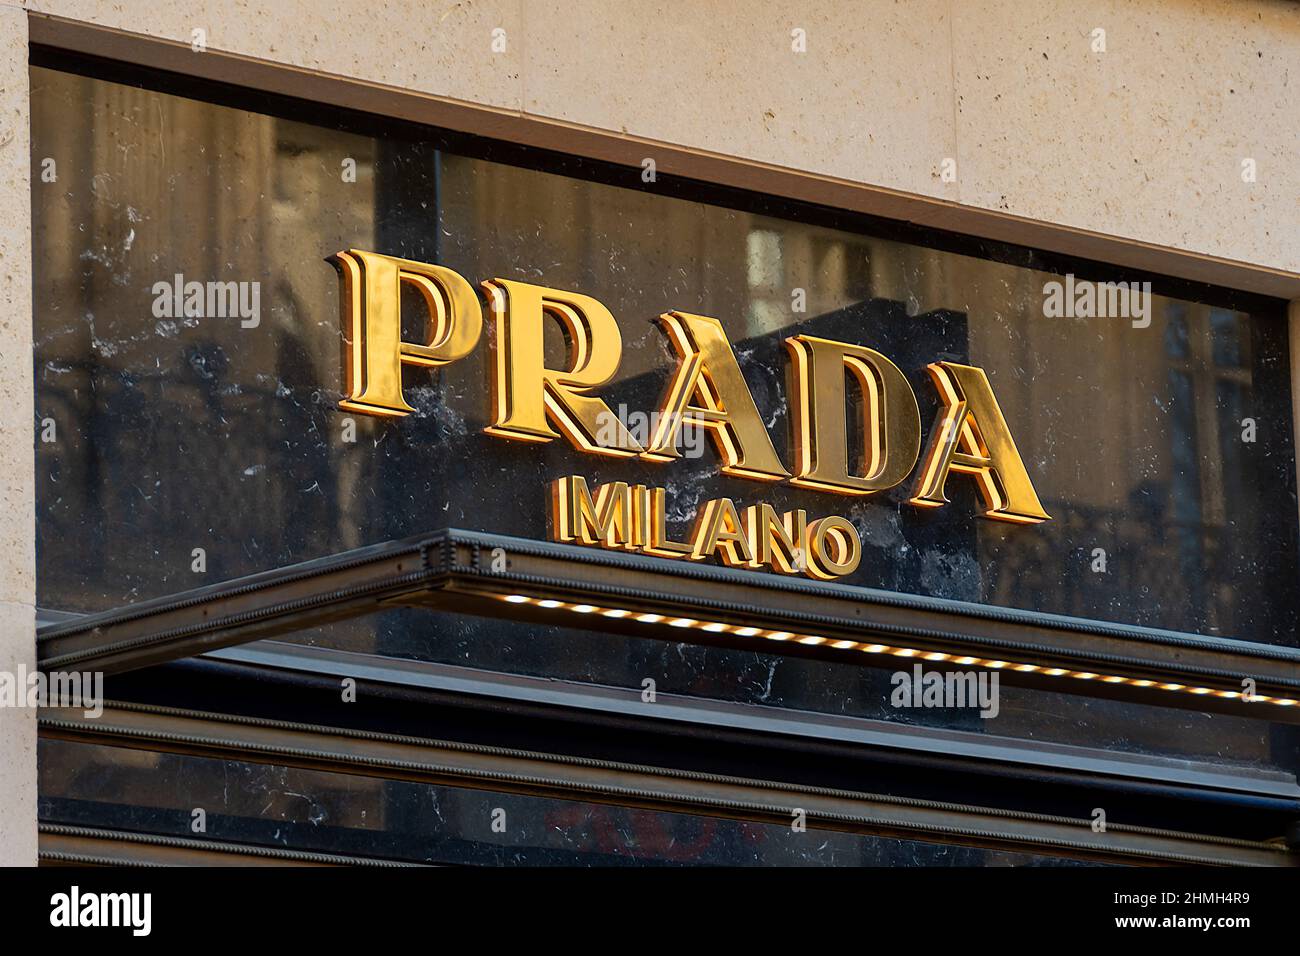 Prada paris hi-res stock photography and images - Alamy